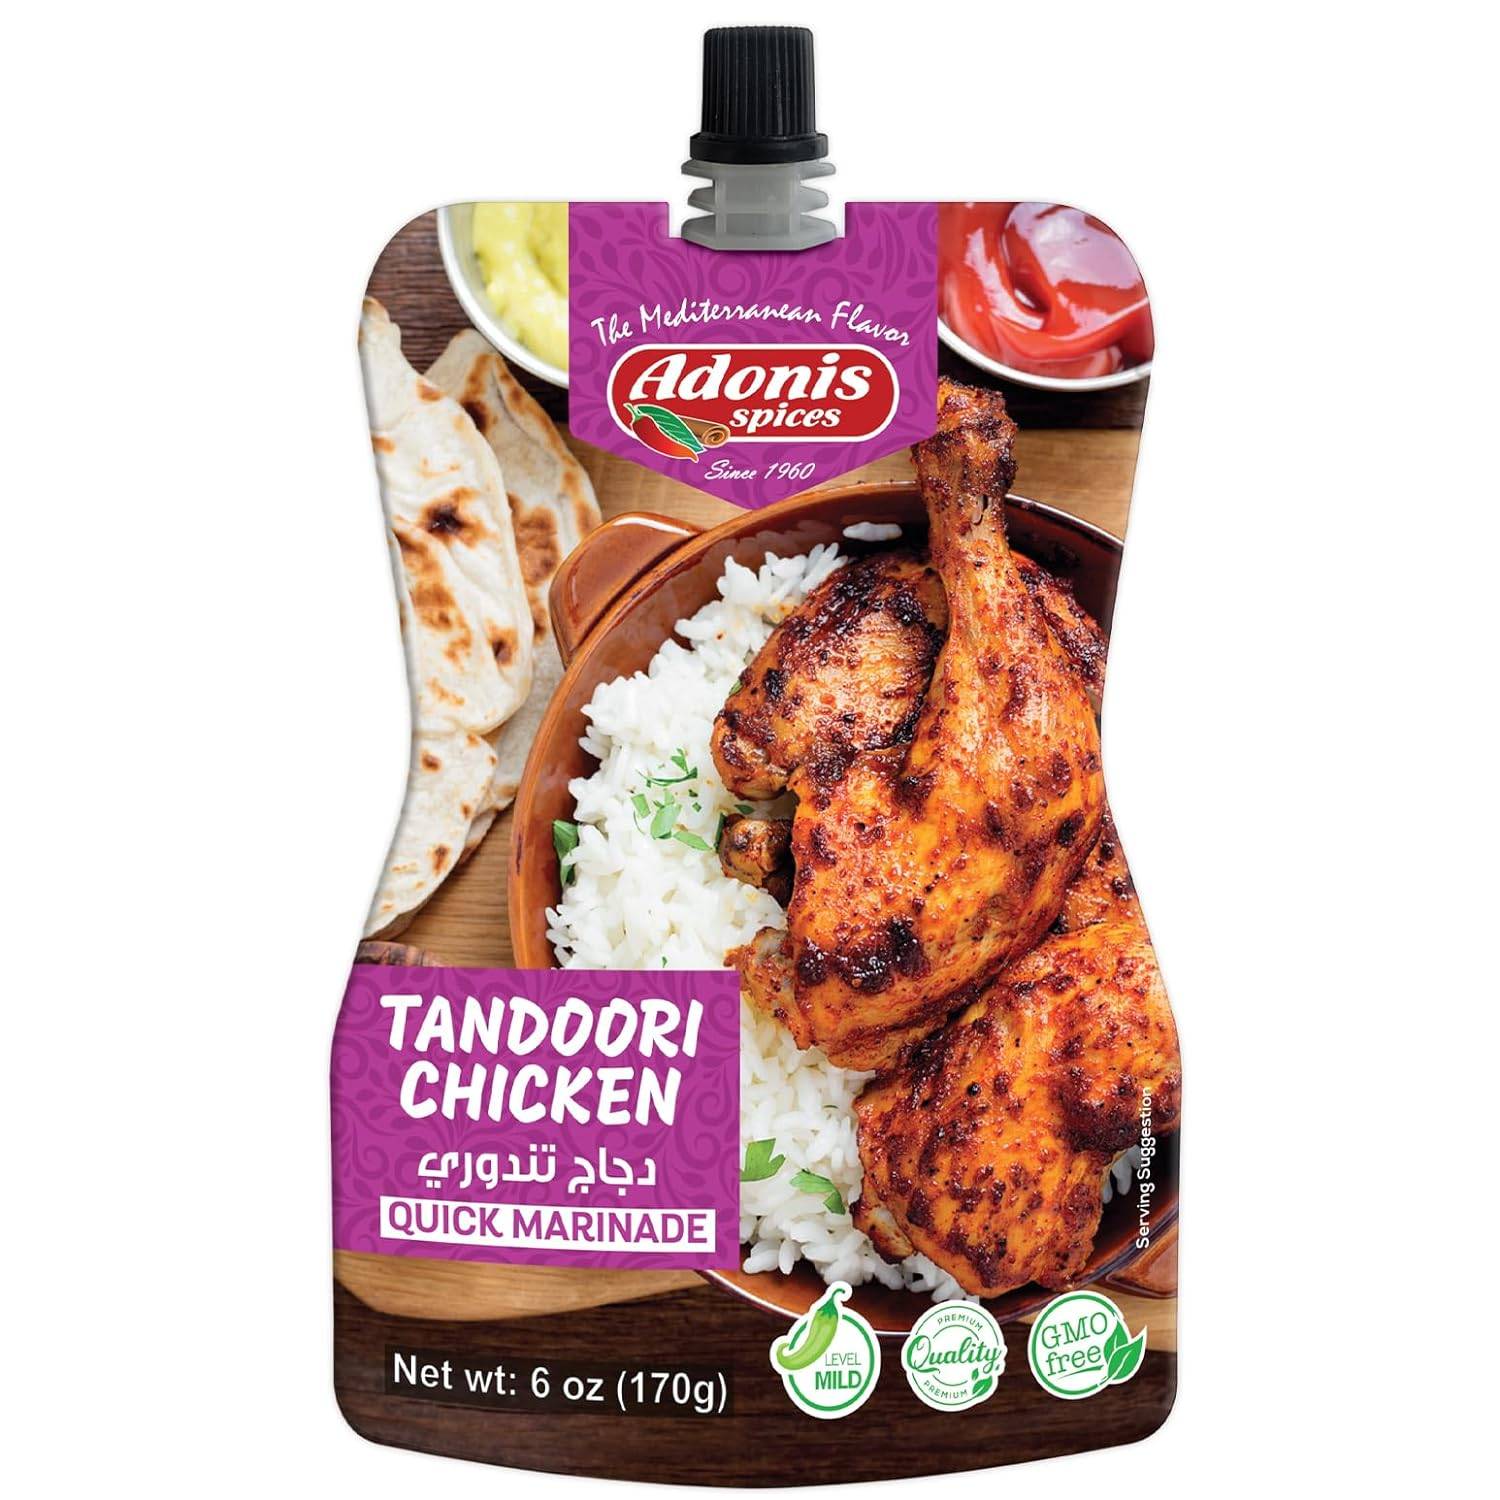 Adonis - Tandoori Chicken Recipe Quick Marinade, 6 Oz 